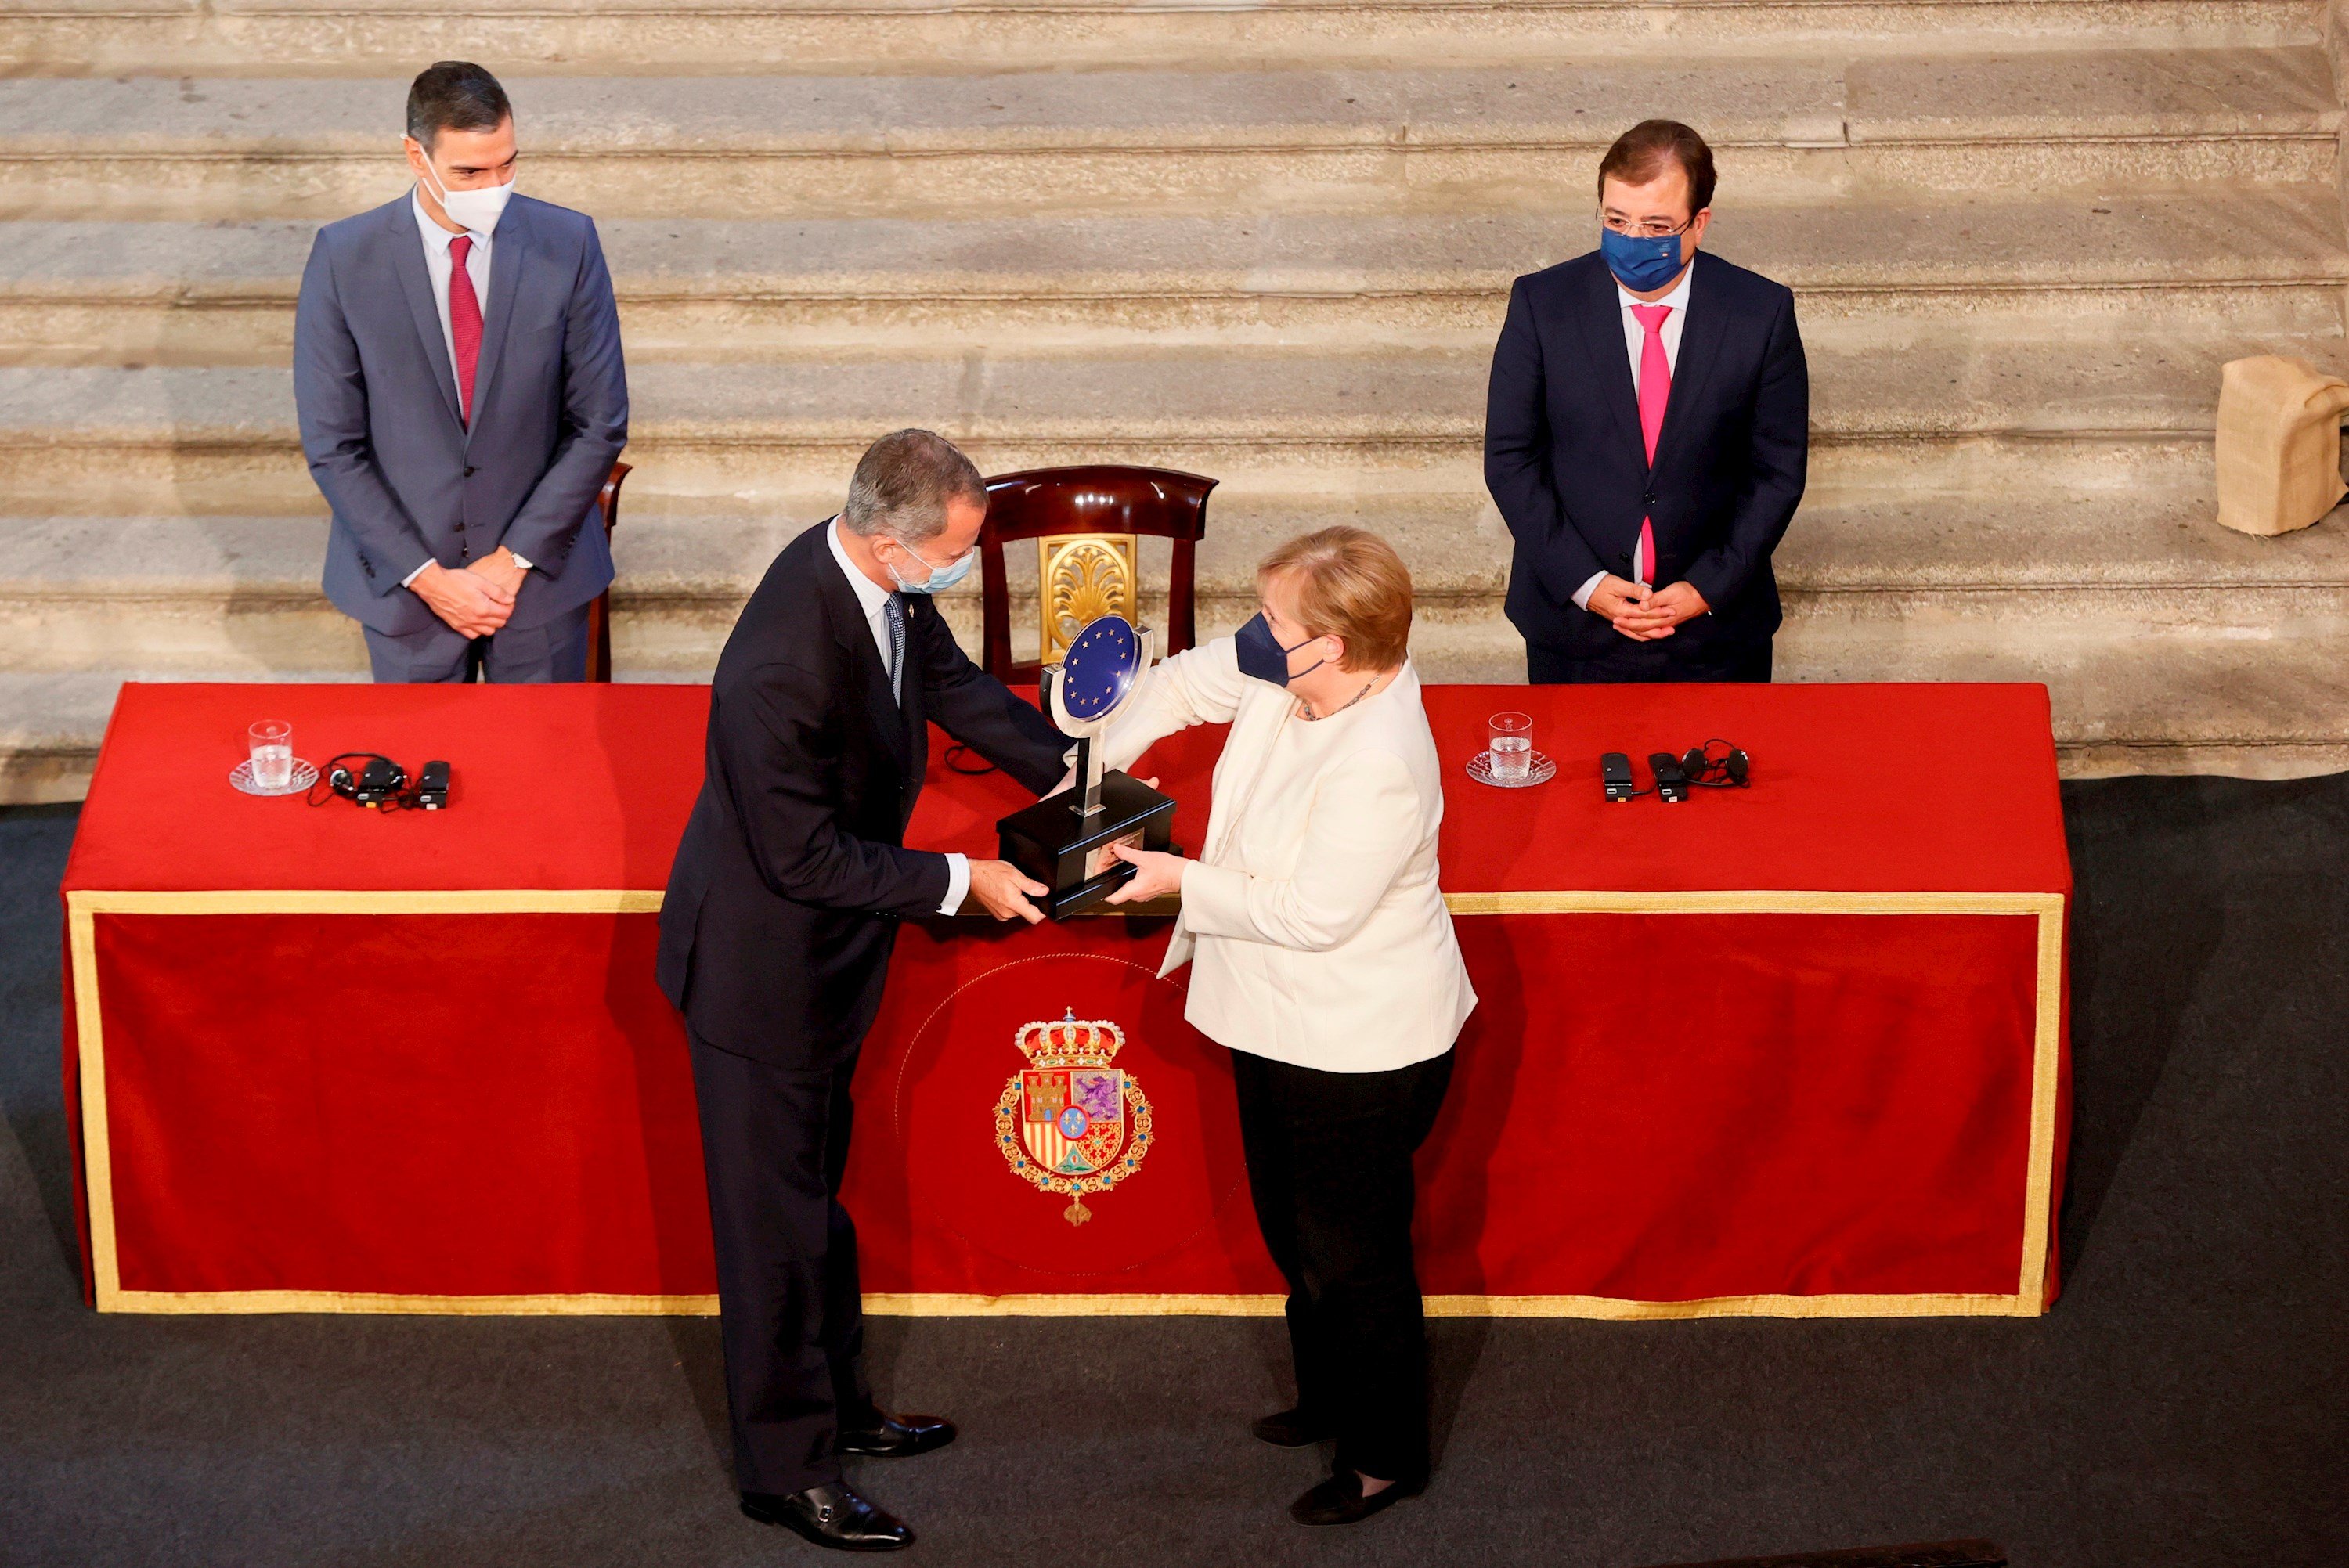 El presidente del gobierno, Pedro Sánchez, Angela Merkel con el rey Felipe VI, entrega premios Carlos V, Cuacos de Yuste, Cáceres - Efe